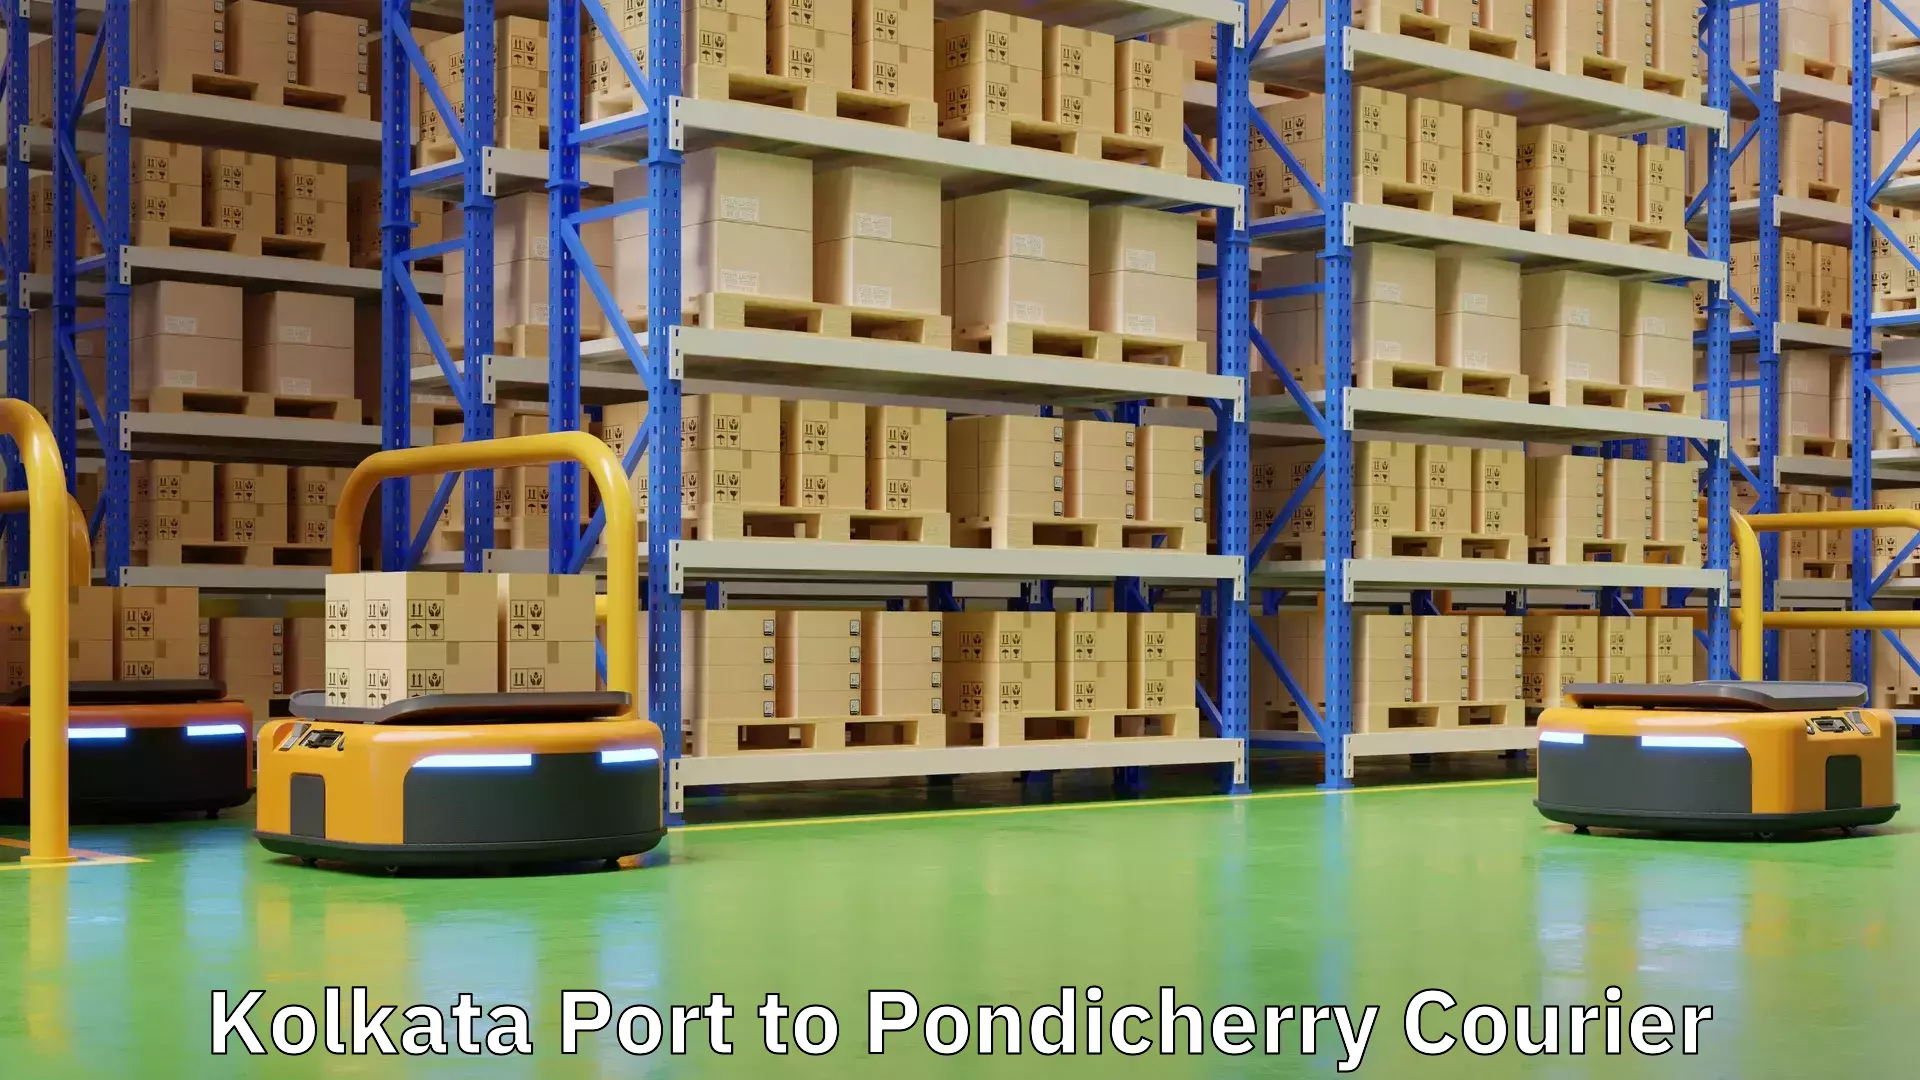 Tracking updates Kolkata Port to Pondicherry